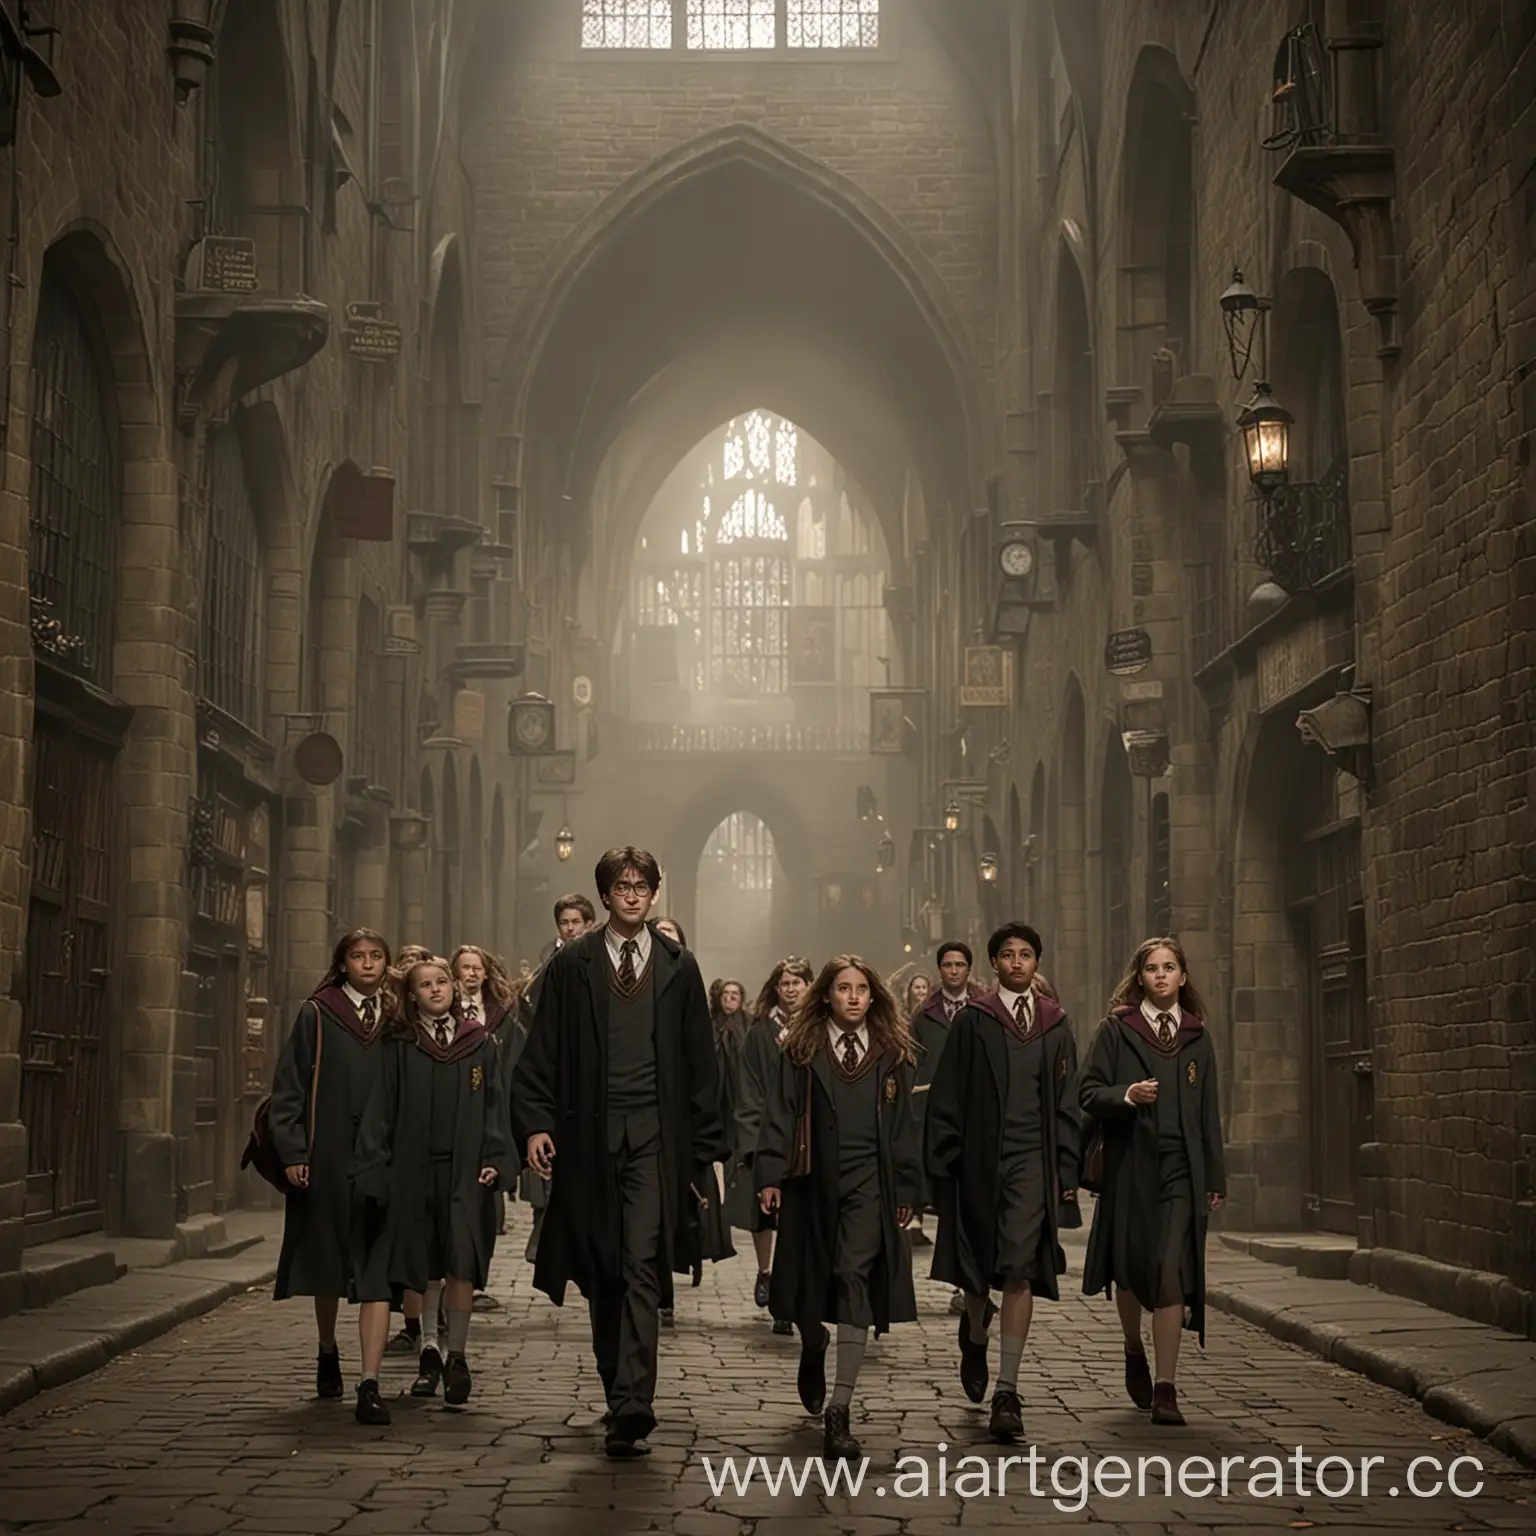 [Гарри, Гермиона и пропавшие ученики возвращаются в Хогвартс.]

Гарри: "Миссия выполнена успешно! Теперь мы можем вернуться к нашим занятиям."